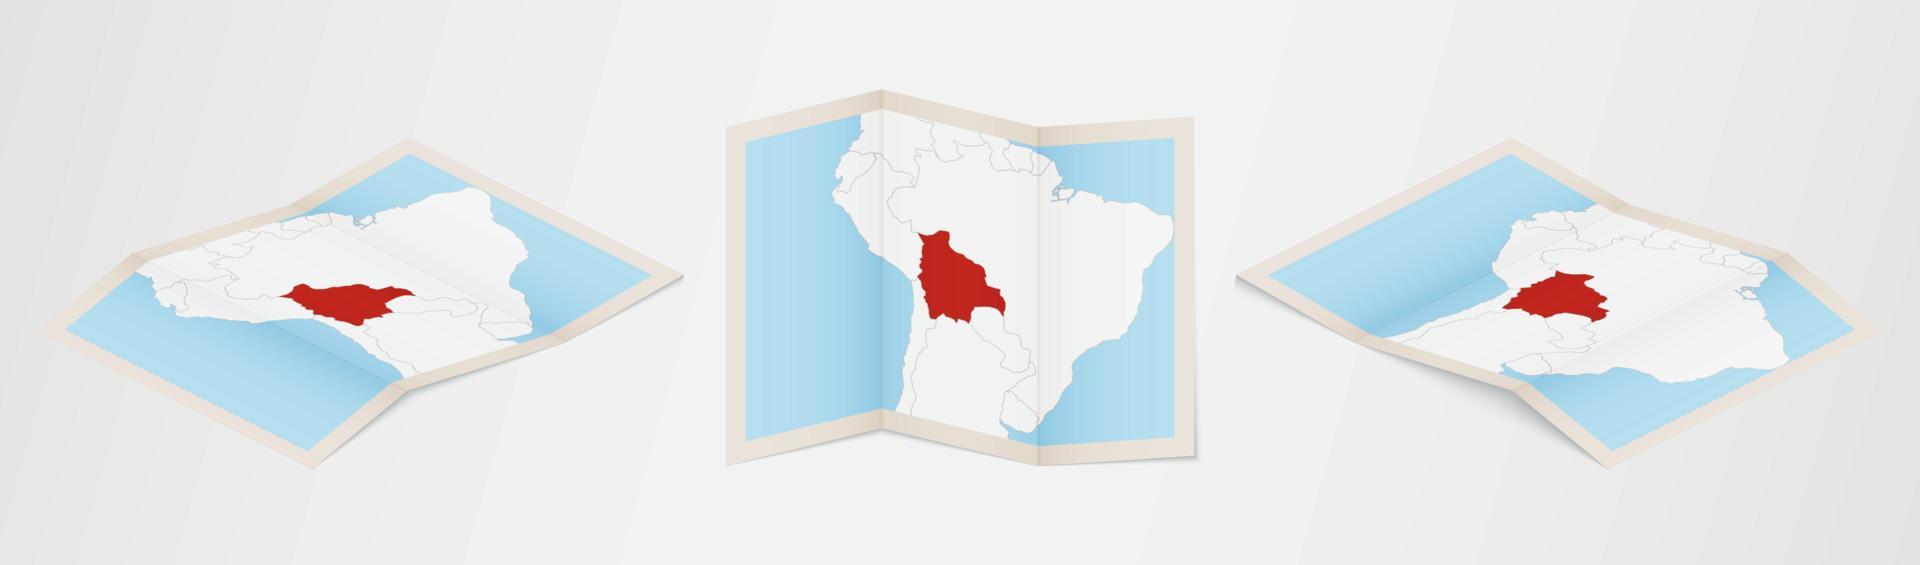 piegato carta geografica di Bolivia nel tre diverso versioni. vettore